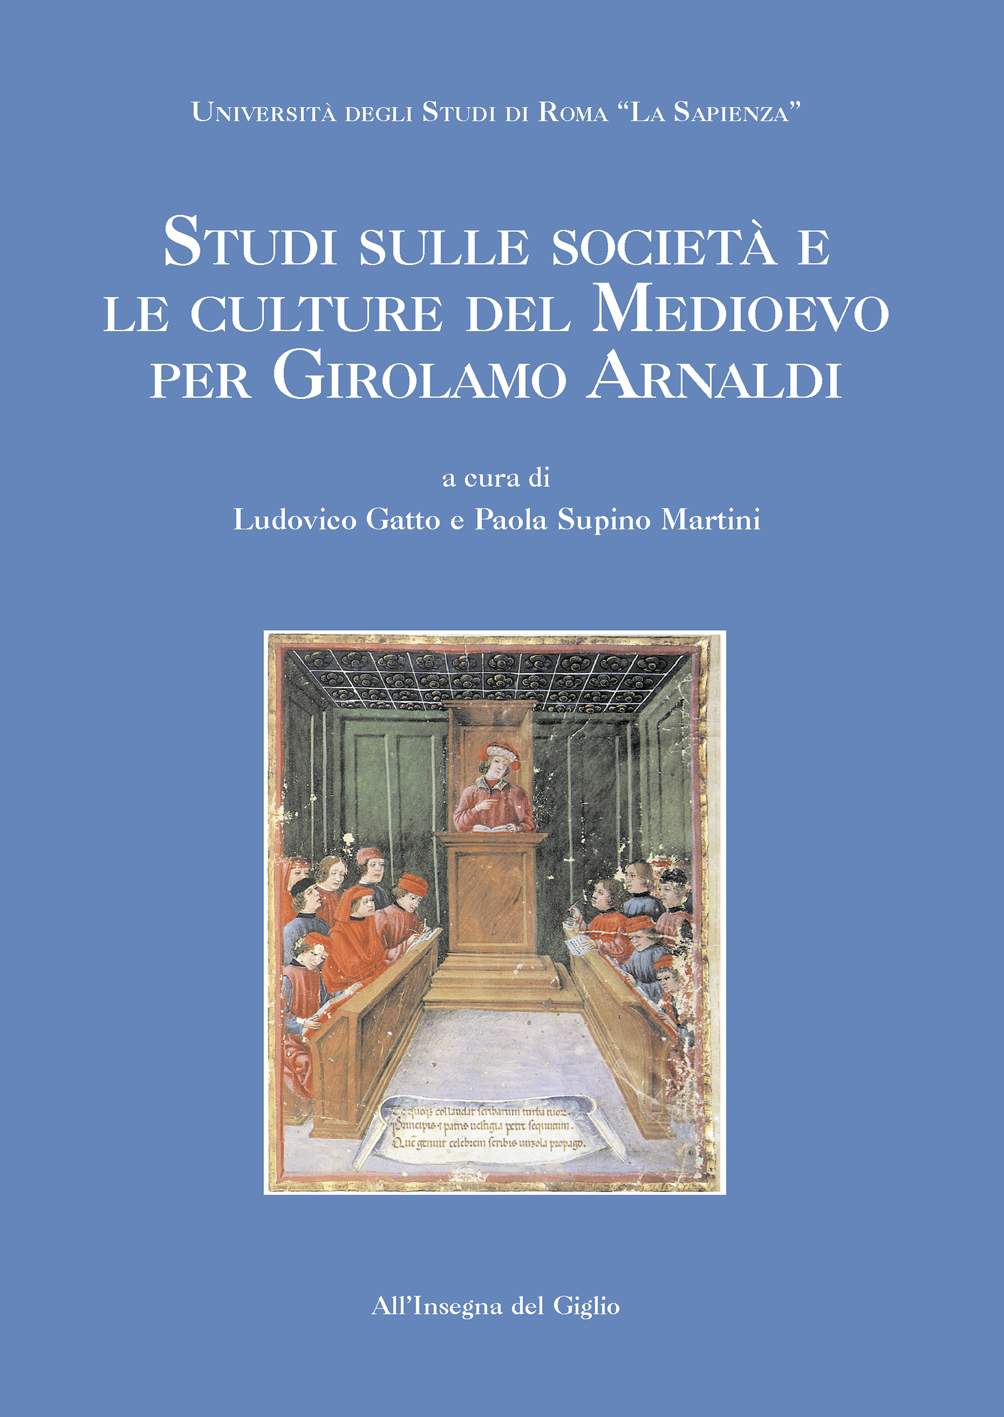 Studi sulle societá e le culture del medioevo per Girolamo Arnaldi